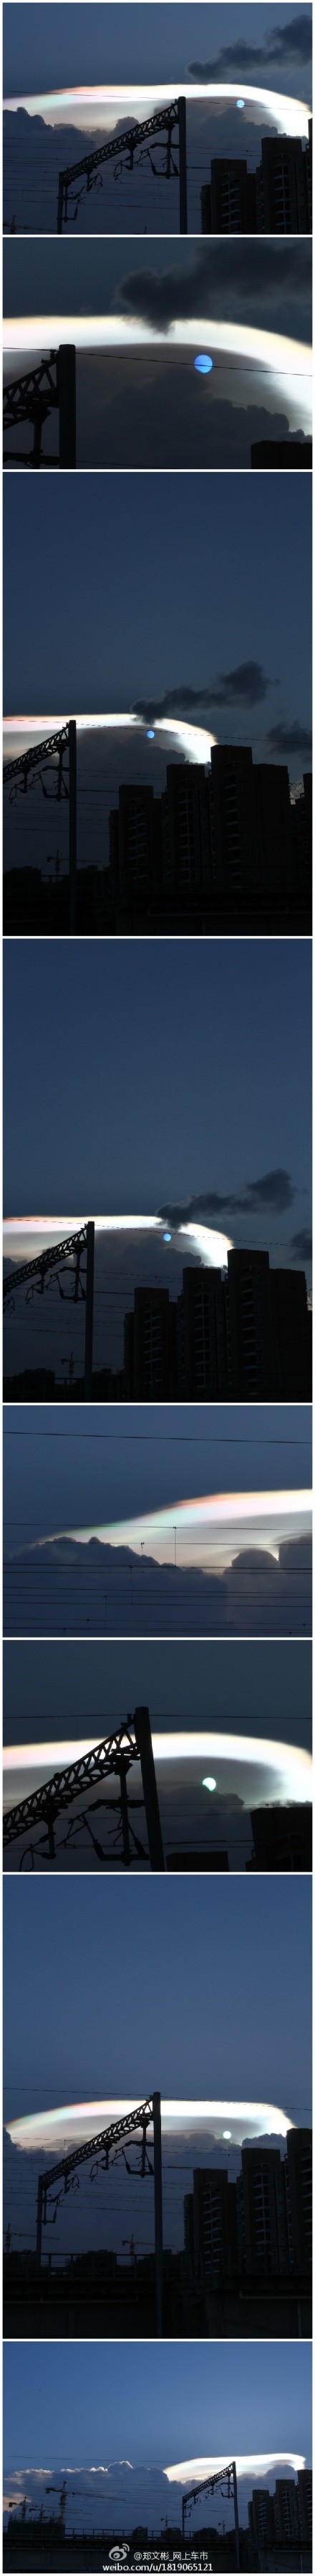 网友“郑文彬_网上车市”拍摄的太阳由蓝色变为绿色的过程和大片彩色云彩。